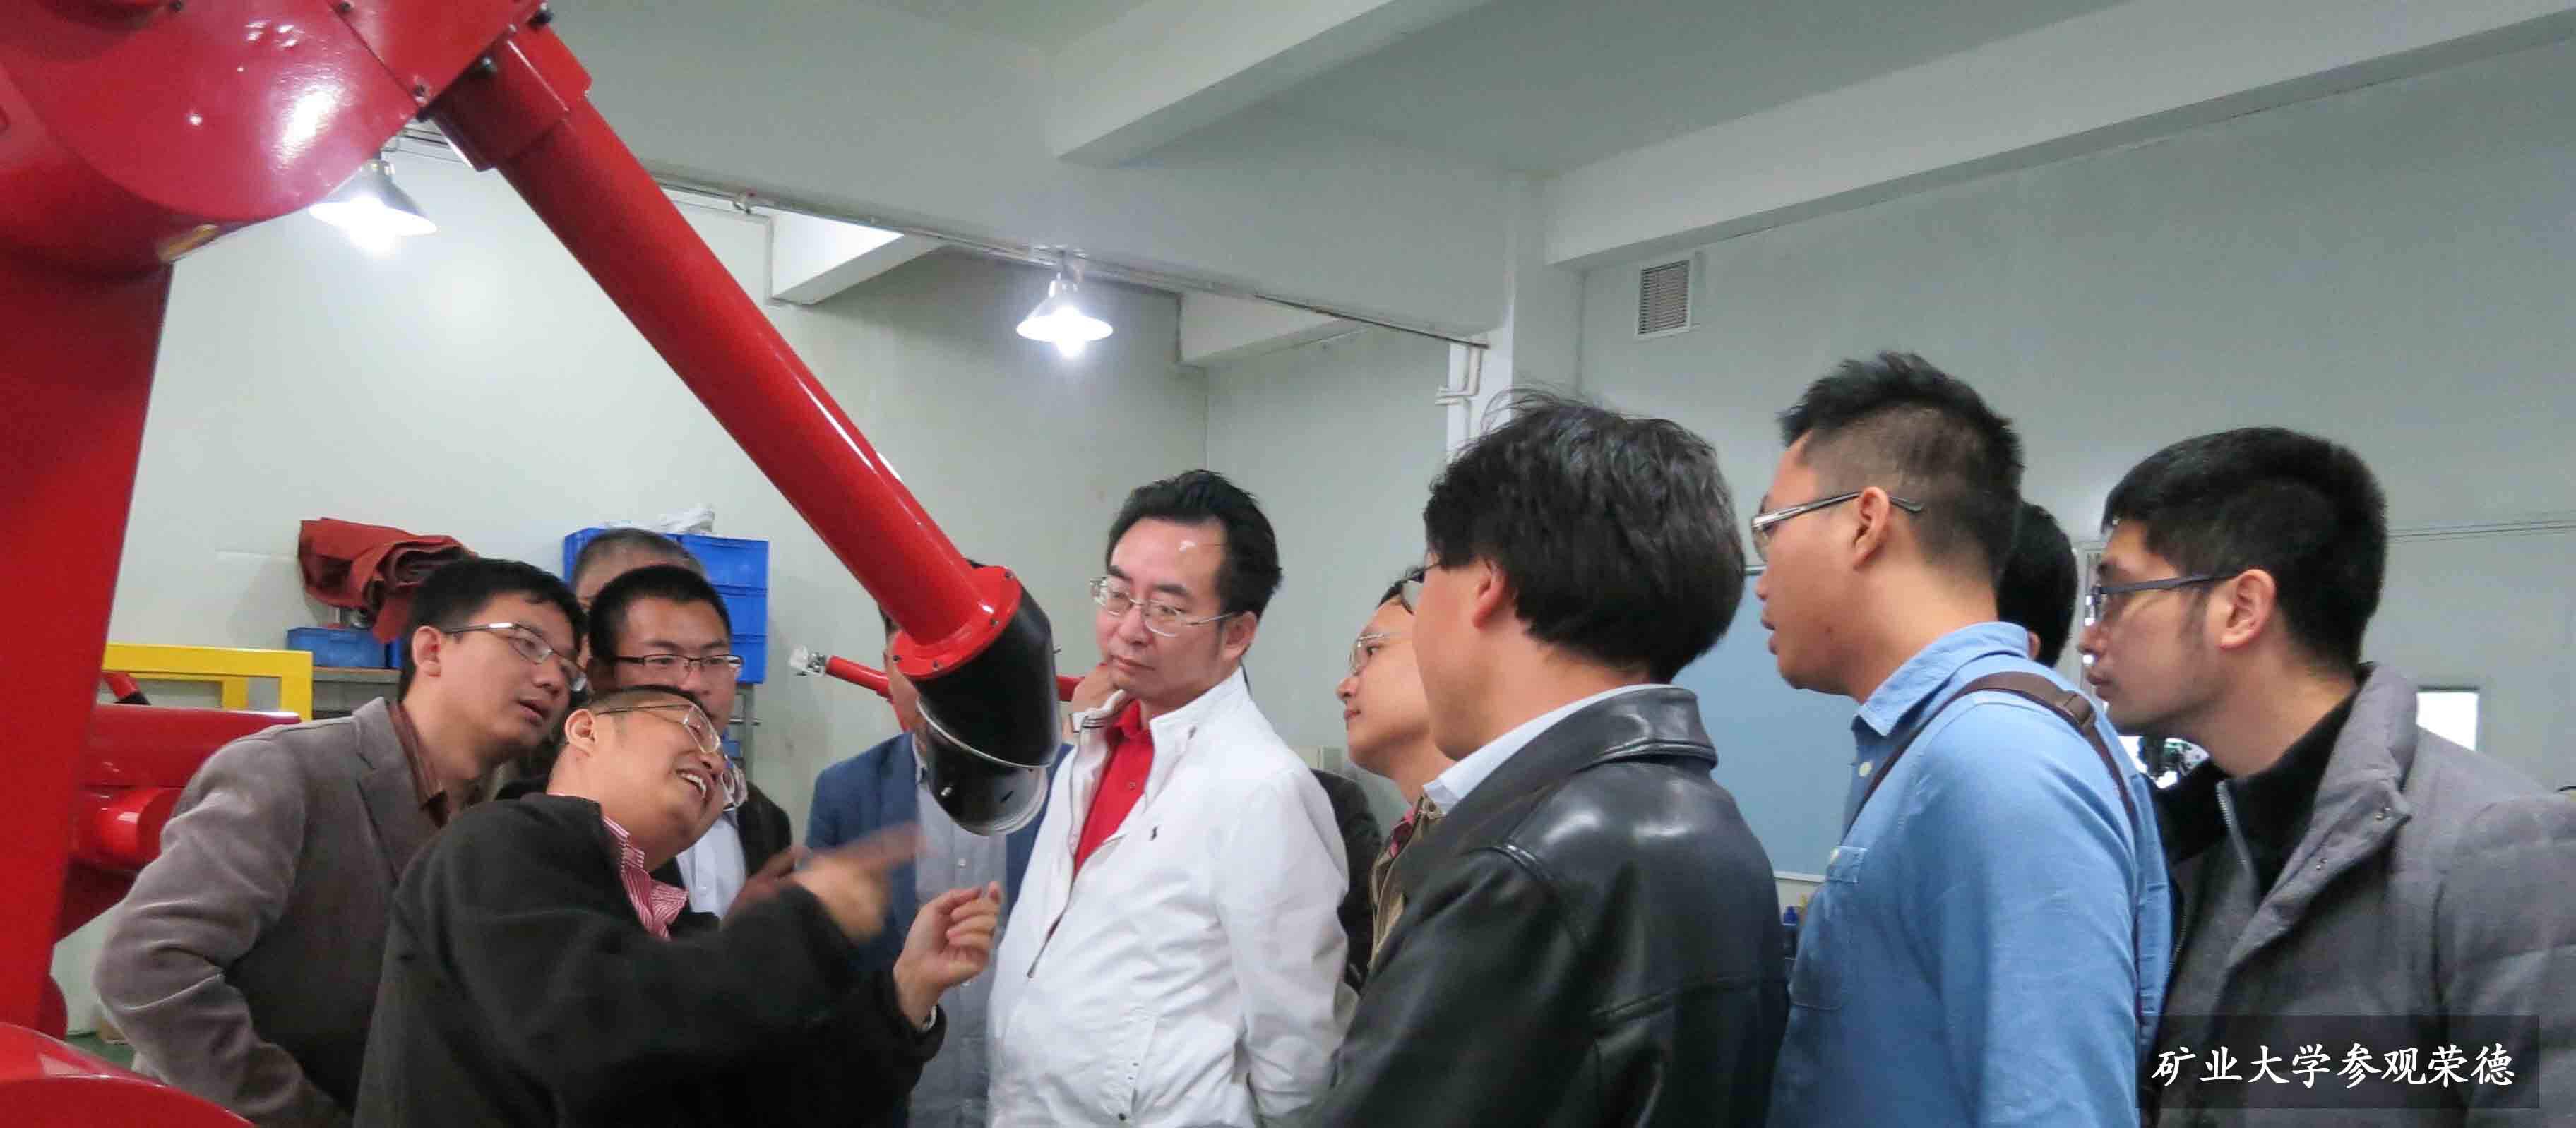 中國物理研究院邀請榮德機器人參加“高效精密功能涂層科學與技術”研討會